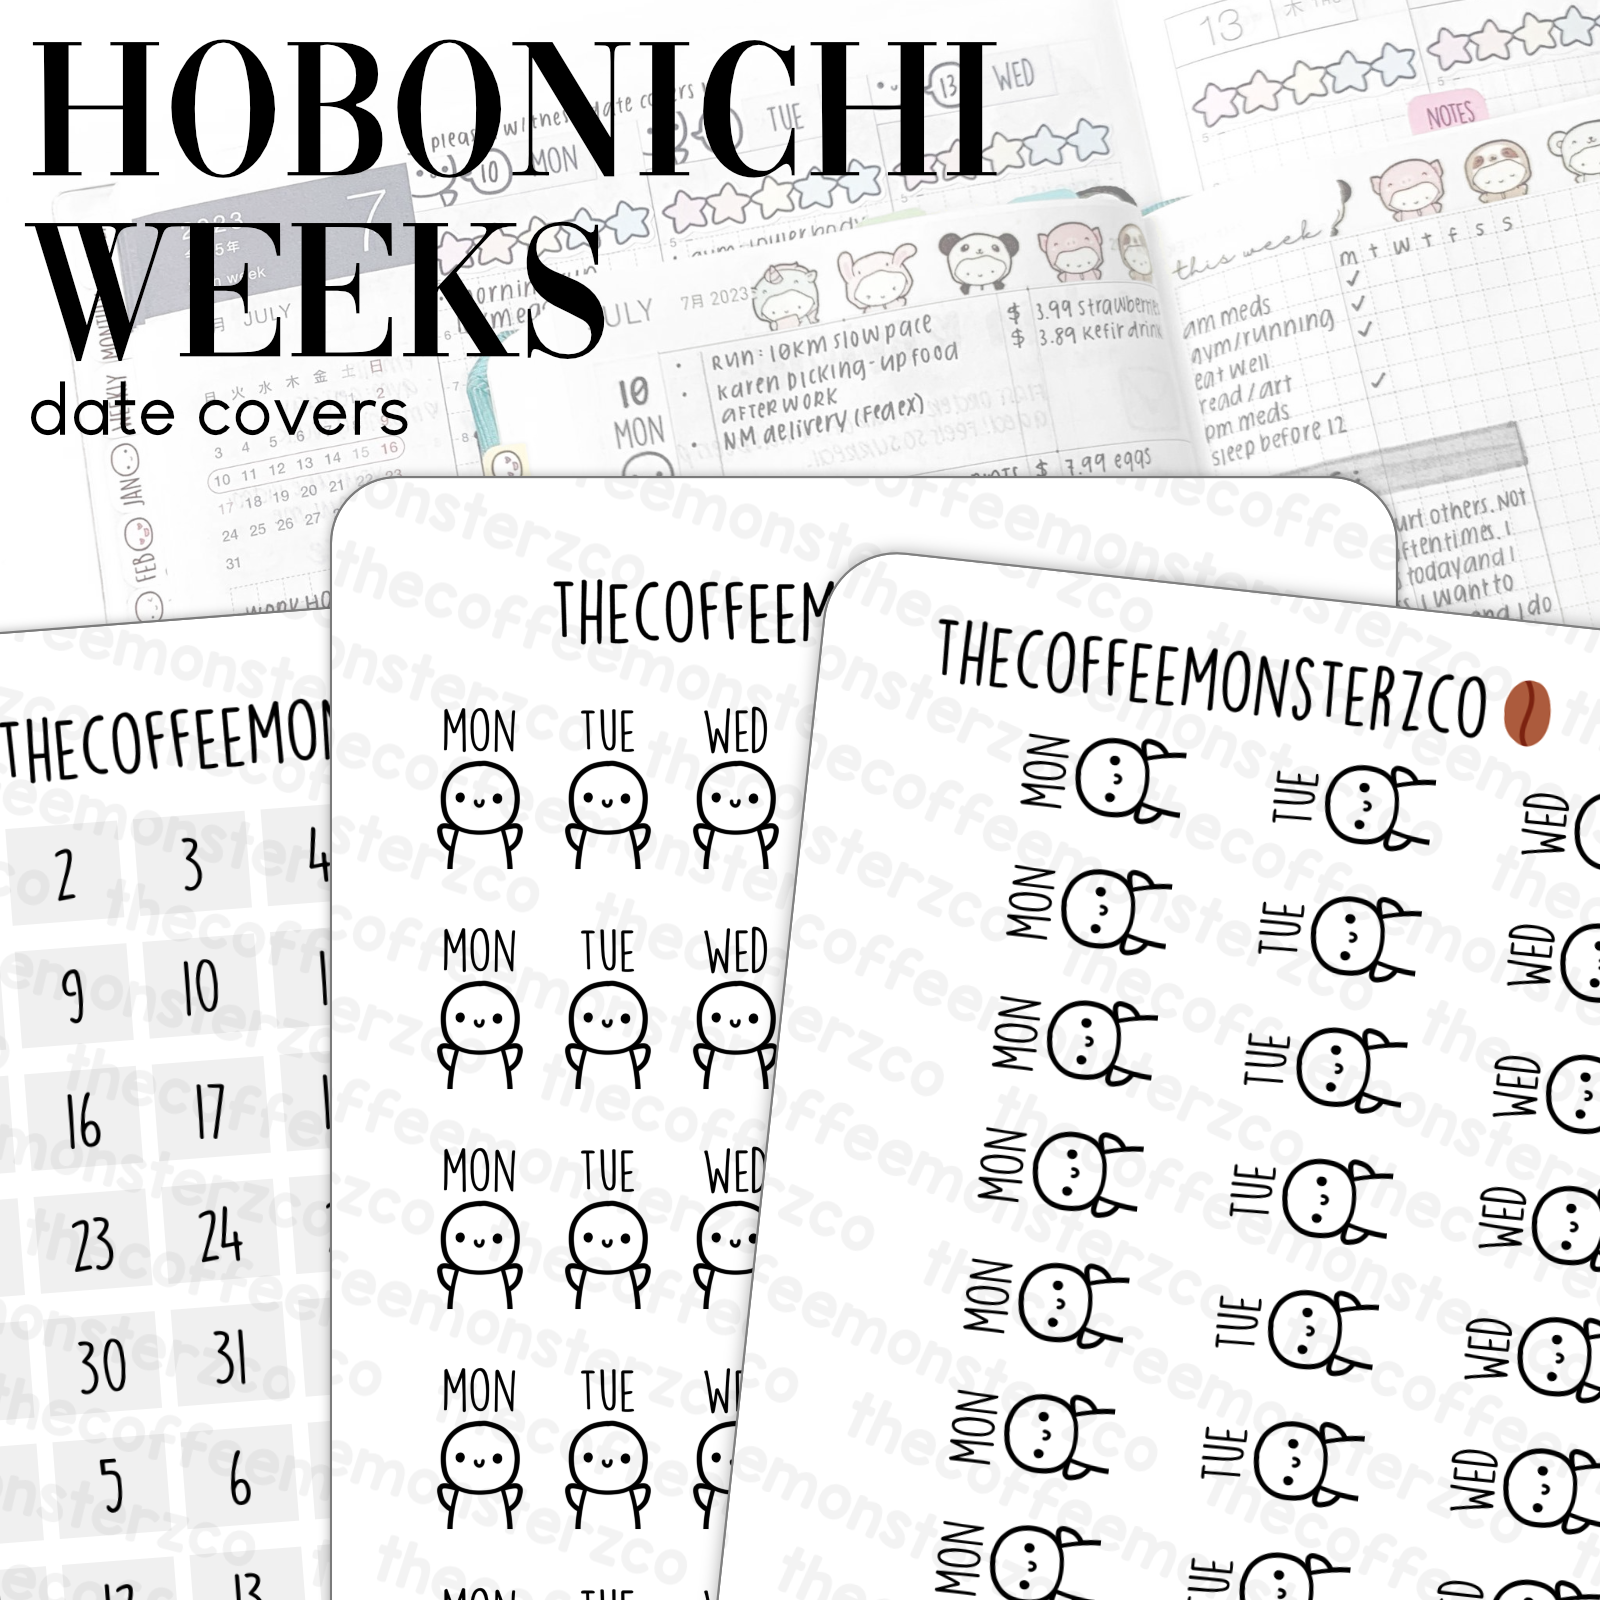 Hobonichi Weeks Covers